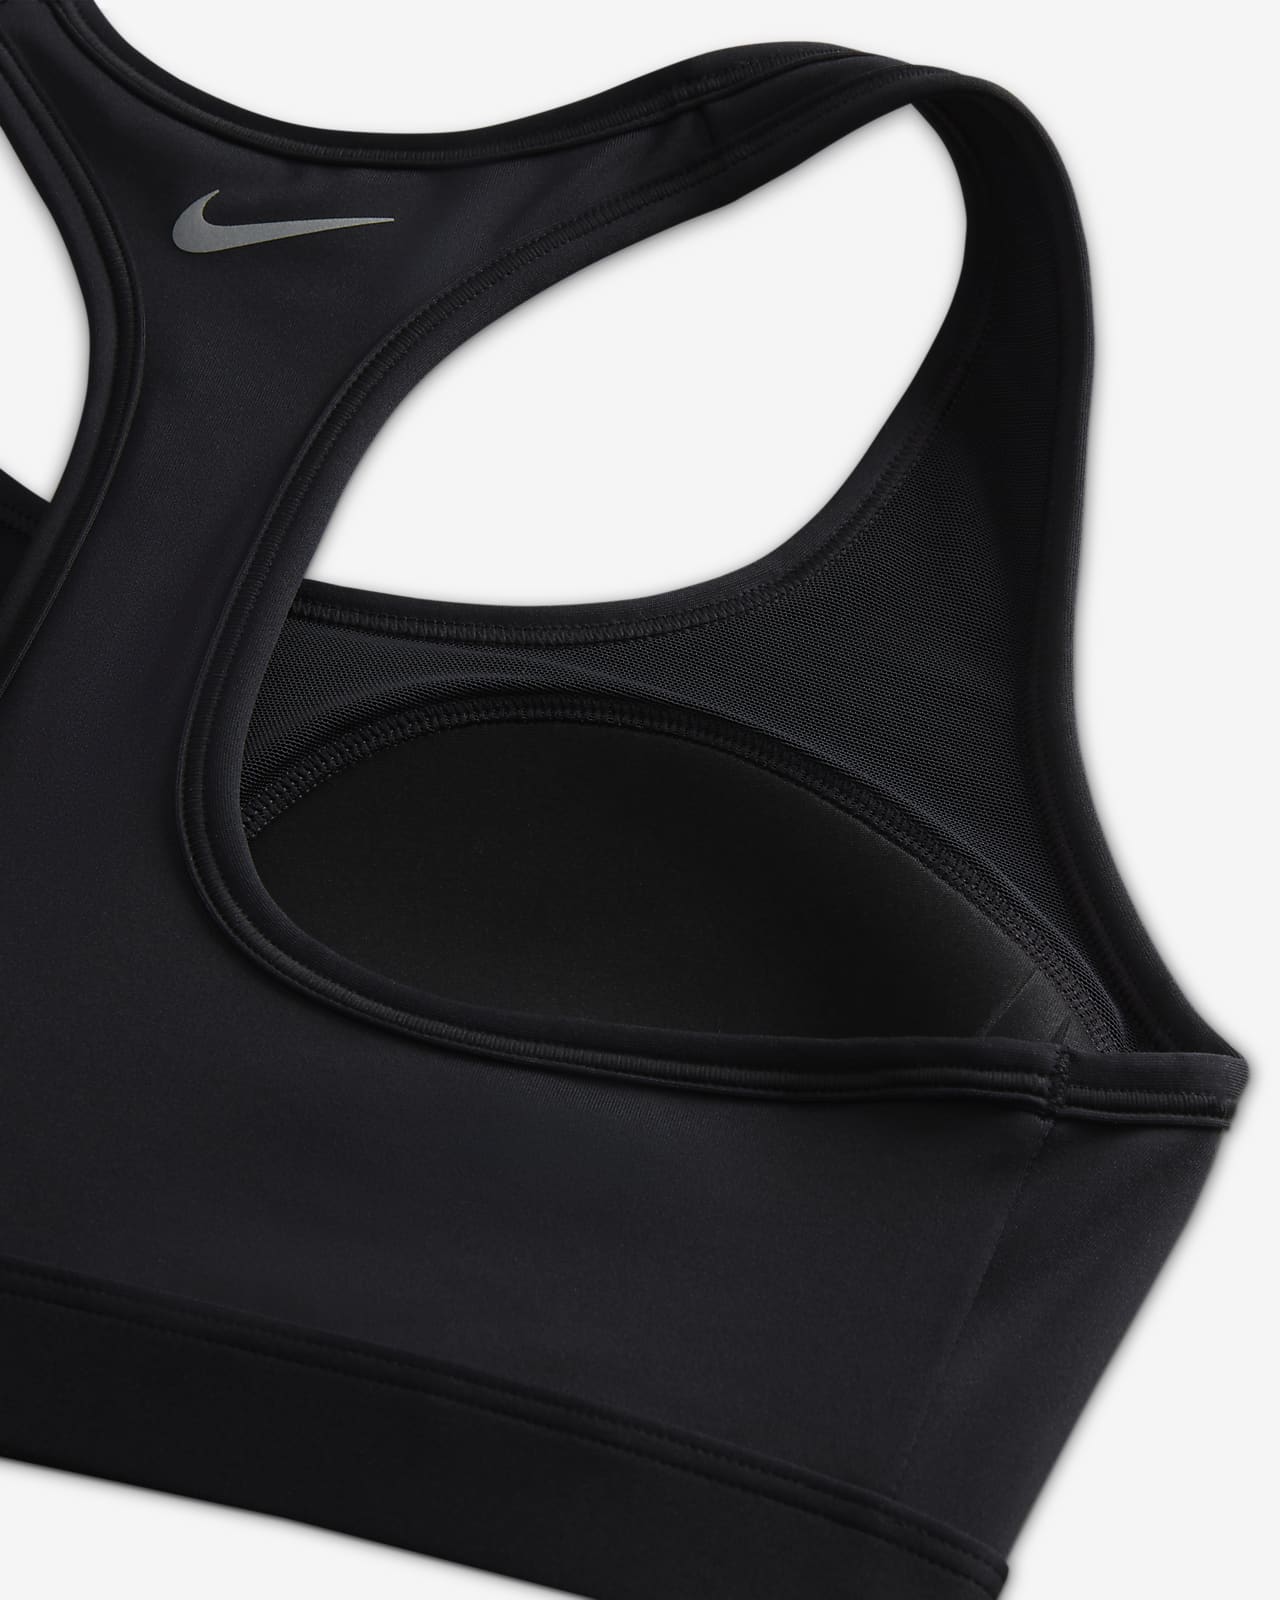 Brassière de sport réglable rembourrée à maintien supérieur Nike Swoosh  pour femme